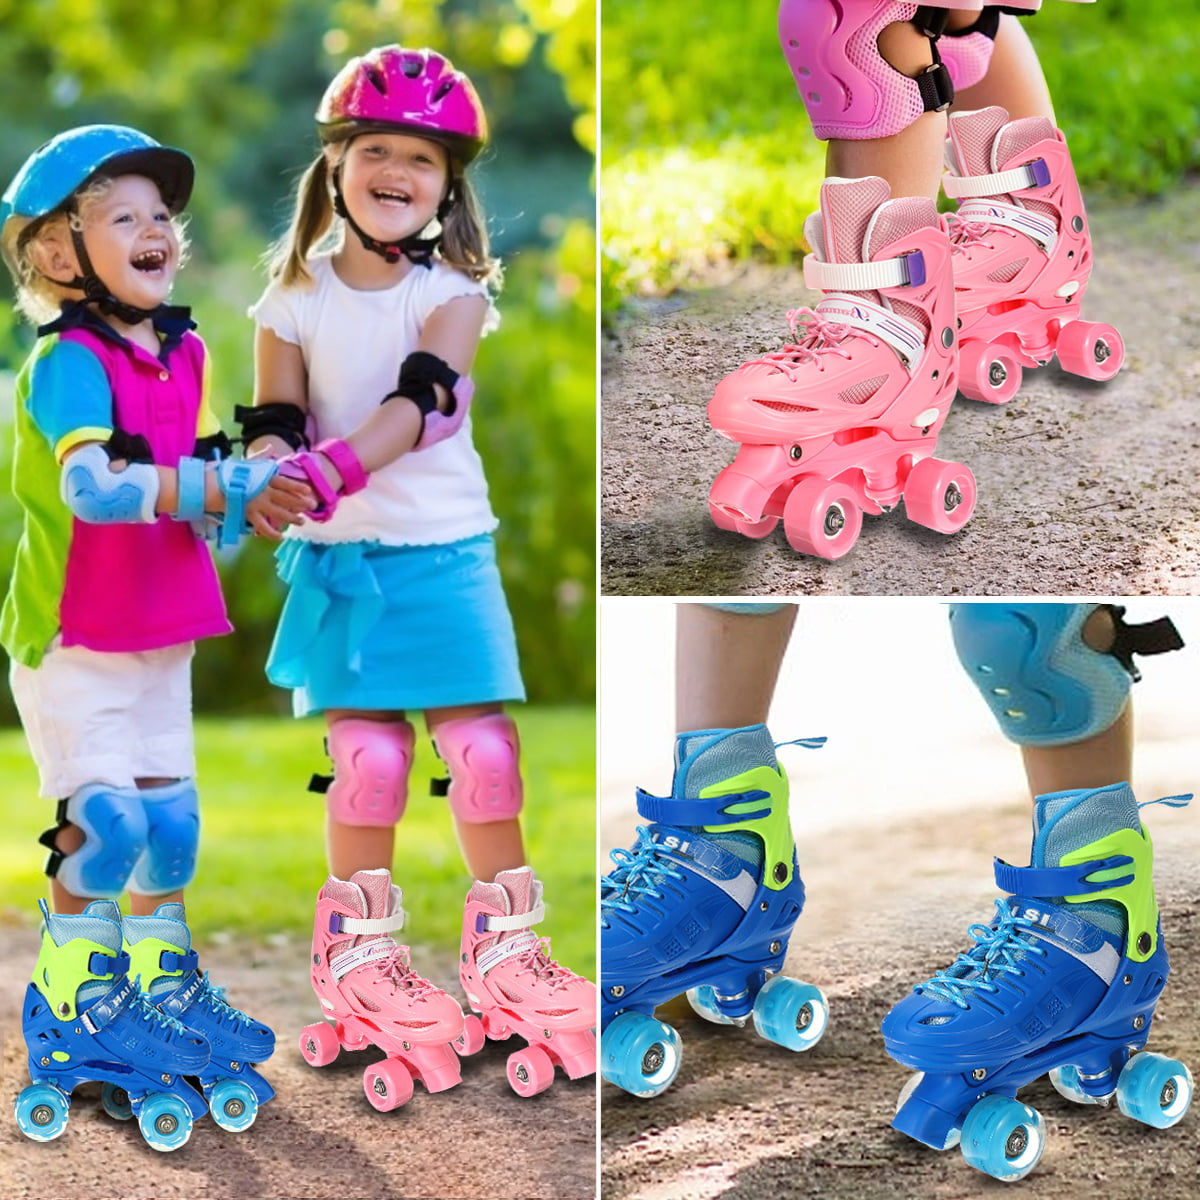 Buy Kids Quad Roller Skates for Boys Girls Adjustable Beginner 